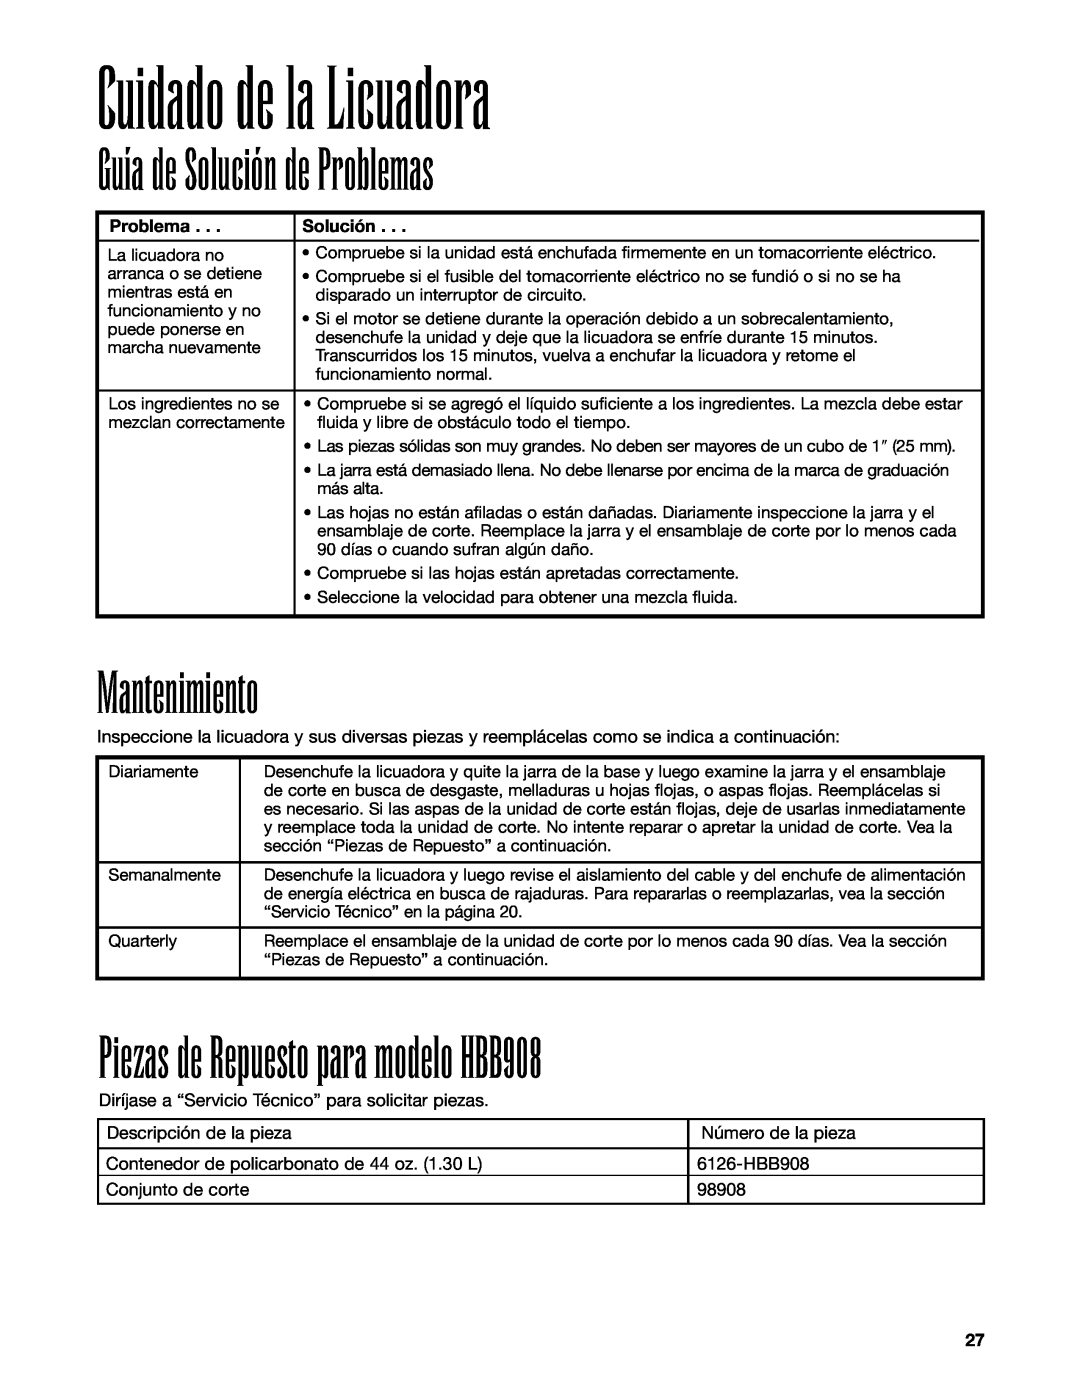 Hamilton Beach manuel dutilisation Guía de Solución de Problemas, Mantenimiento, Piezas de Repuesto para modelo HBB908 